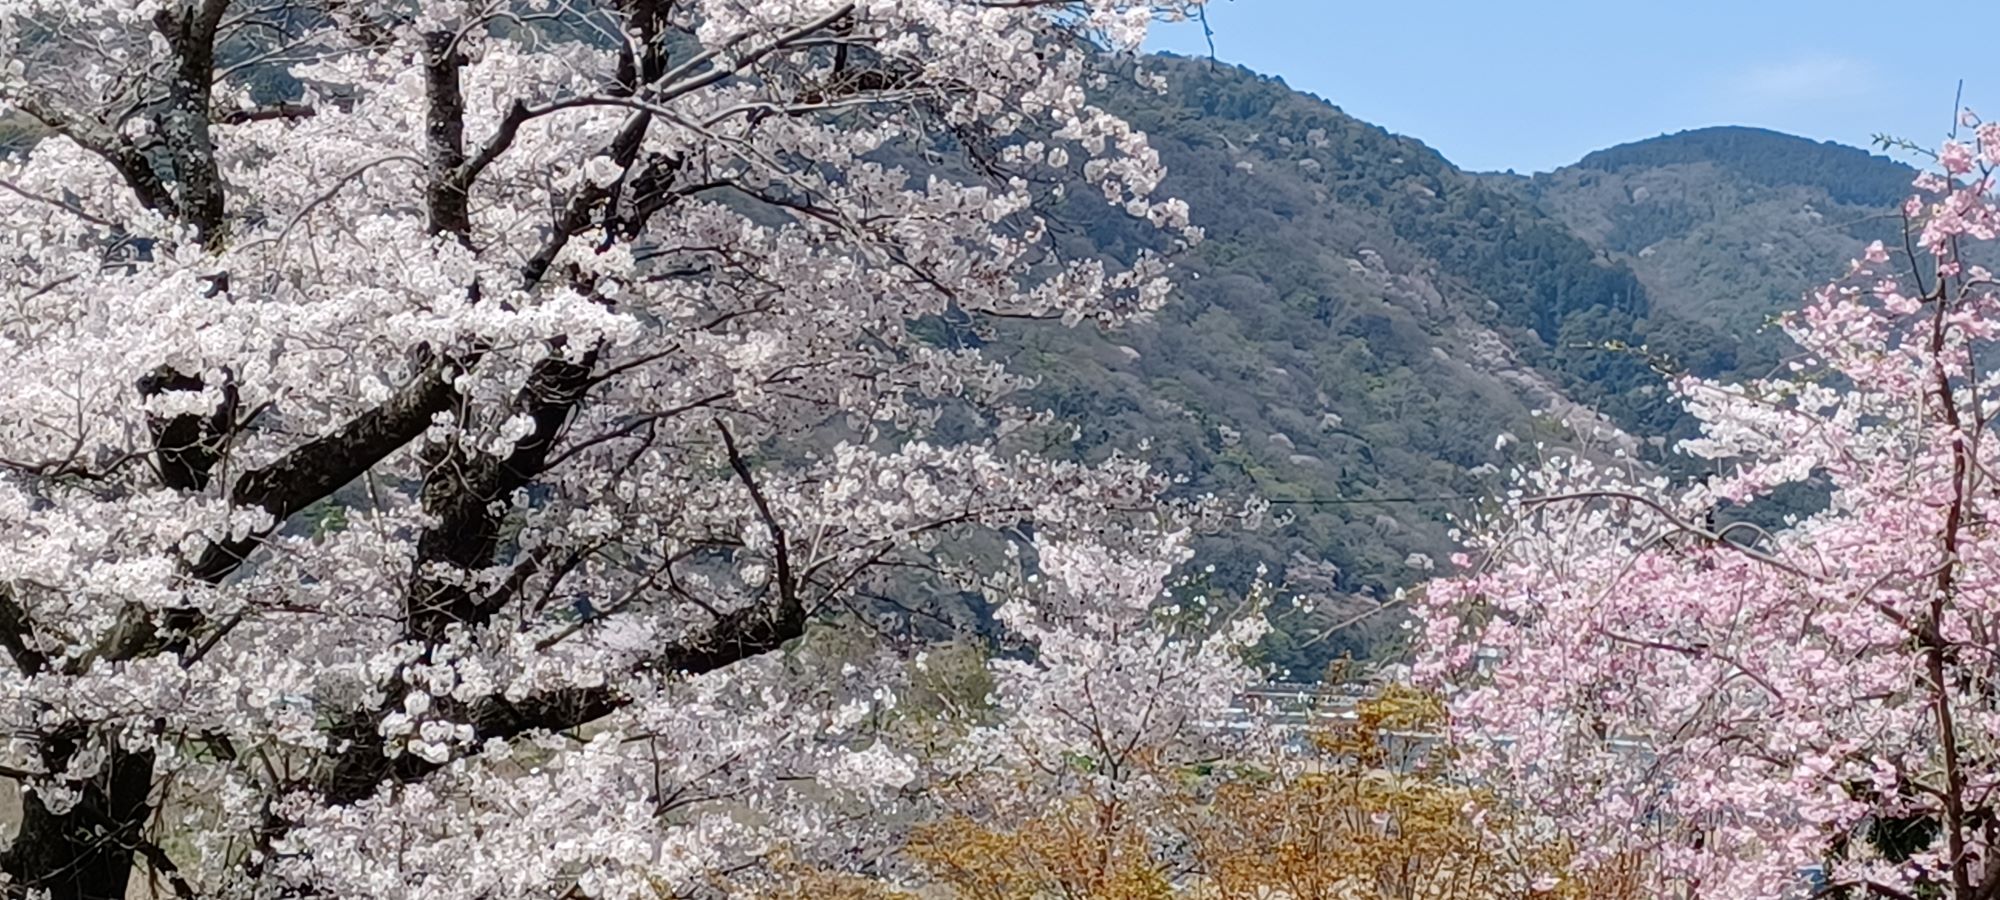 嵐山桜